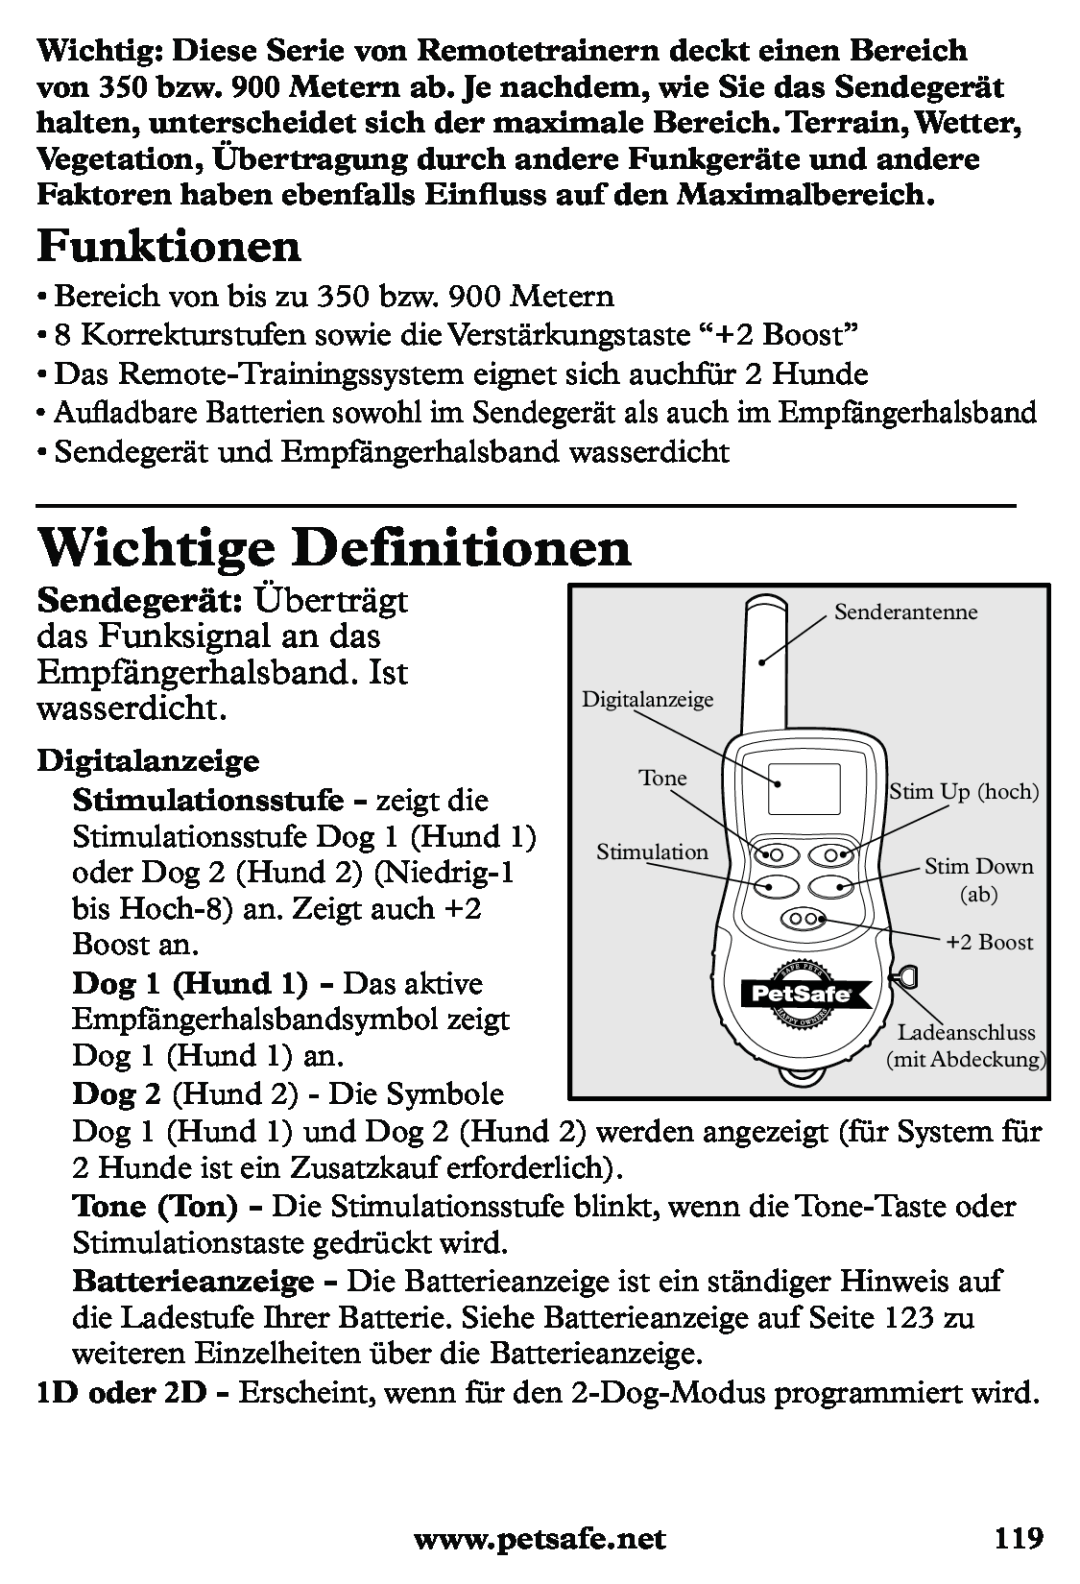 Petsafe PDT20-11939 Wichtige Definitionen, Funktionen, Sendegerät Überträgt, das Funksignal an das, Empfängerhalsband. Ist 